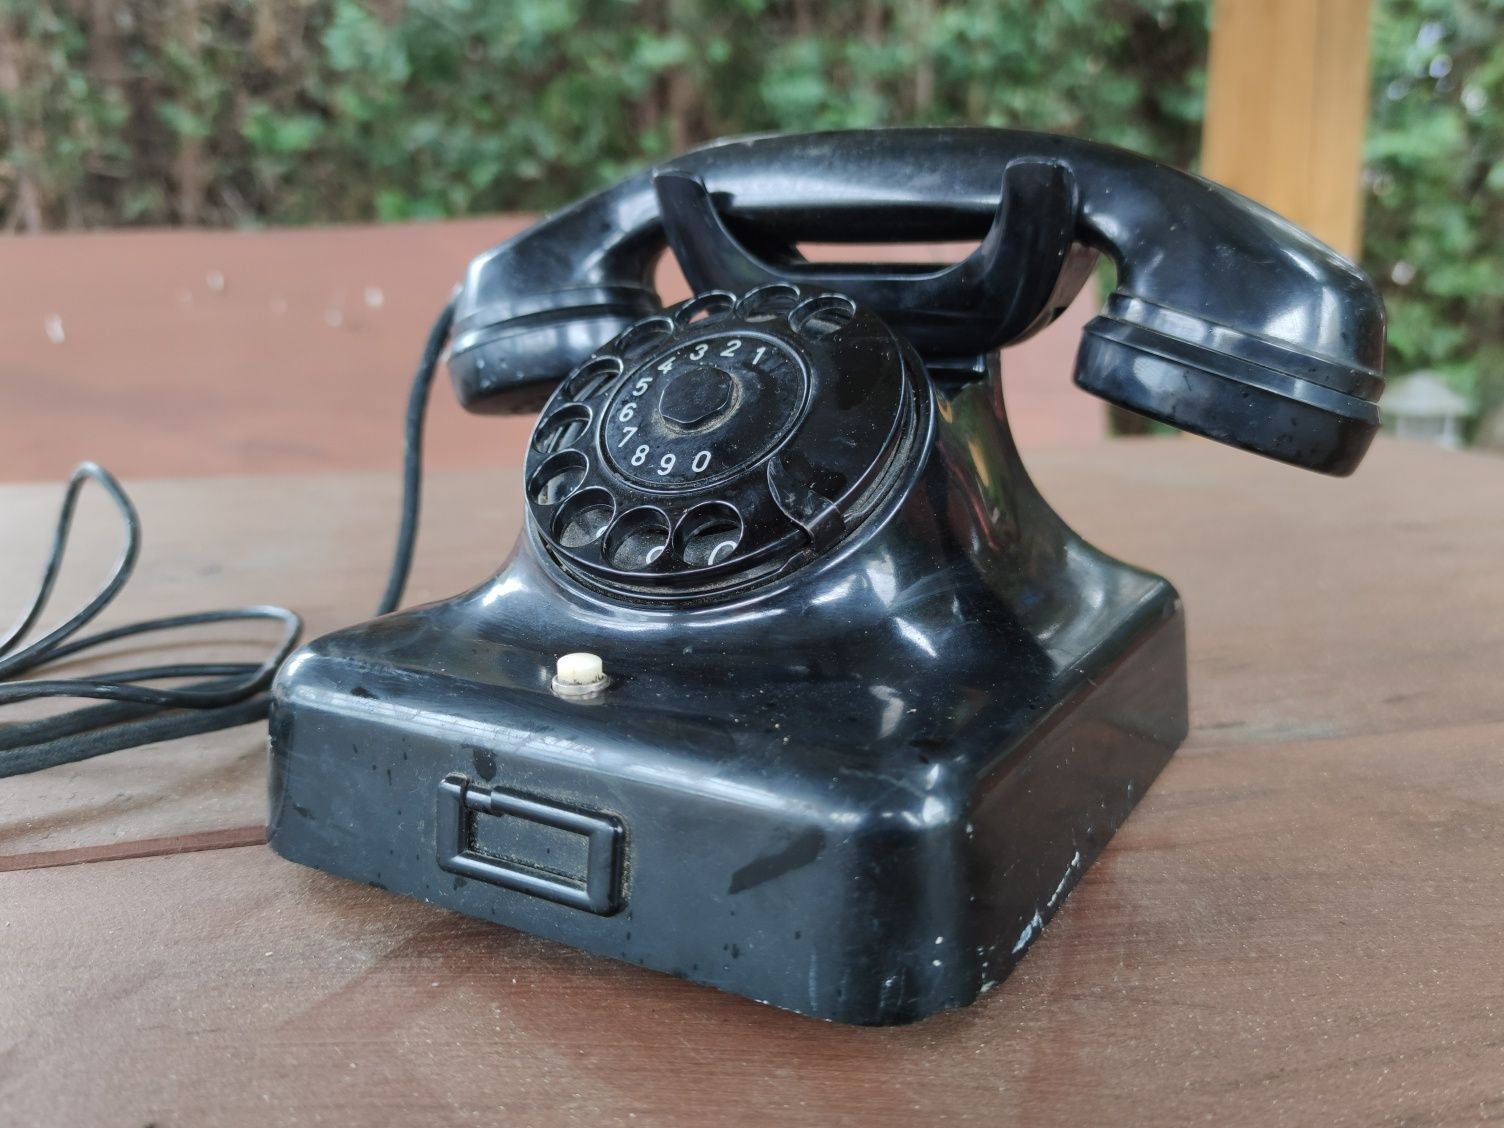 Siemens W48 stary bakelitowy telefon z 1966r industrial design loft